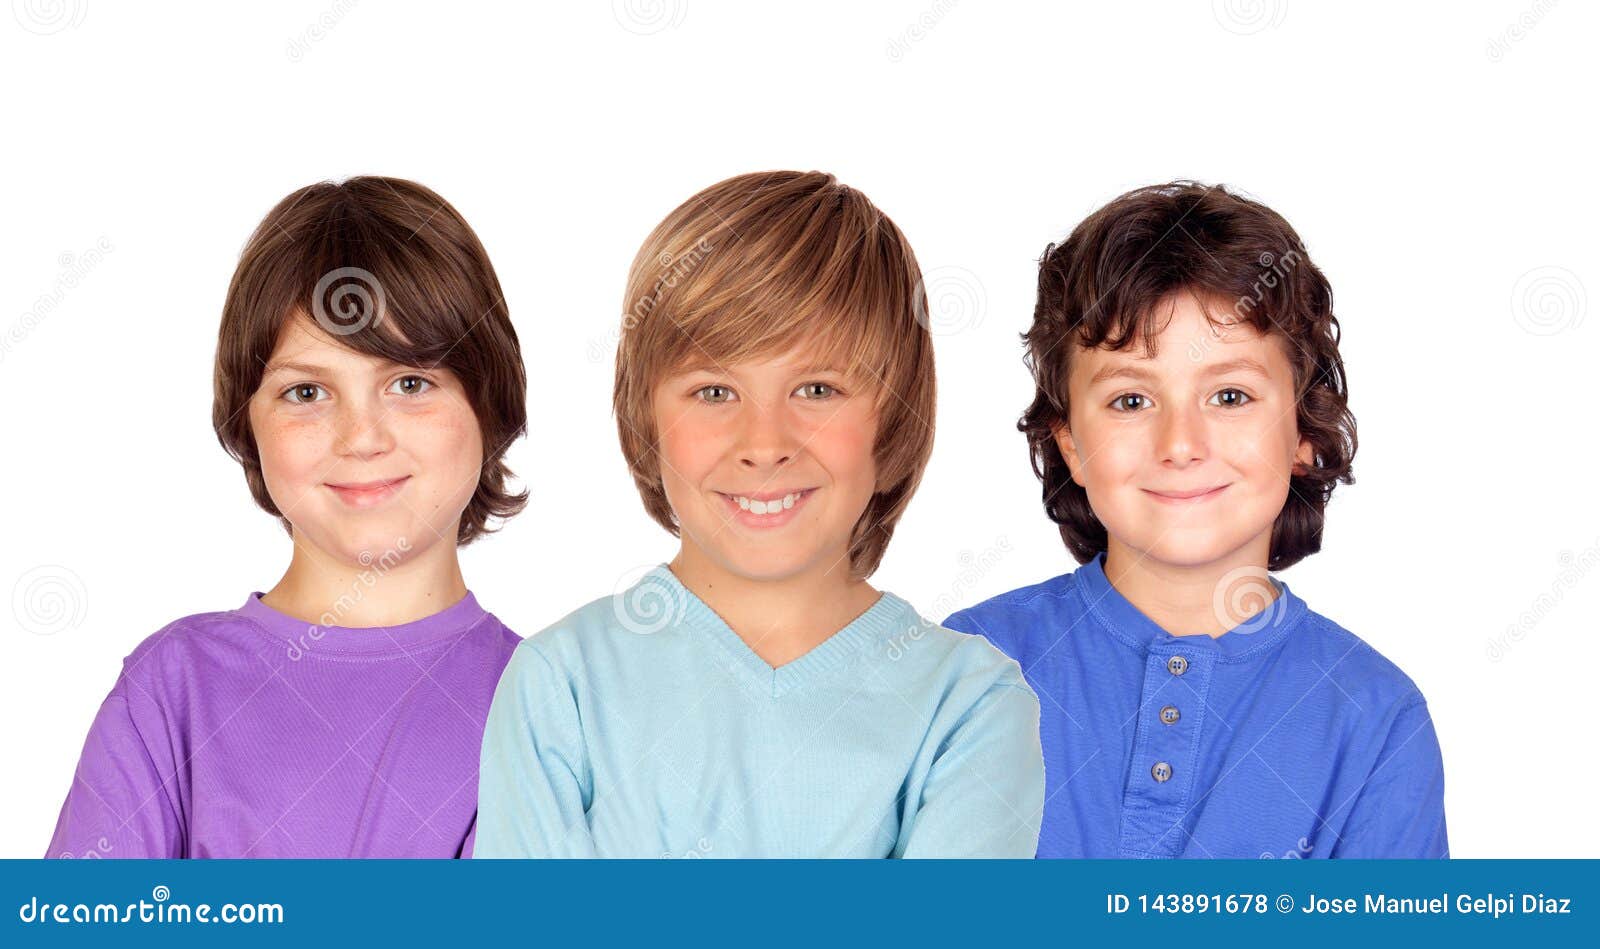 三个男孩 库存照片. 图片 包括有 兄弟, 墙壁, 佩带, 范围, 孪生, 红头发人, 团体, 挑运, 兴奋 - 34125276